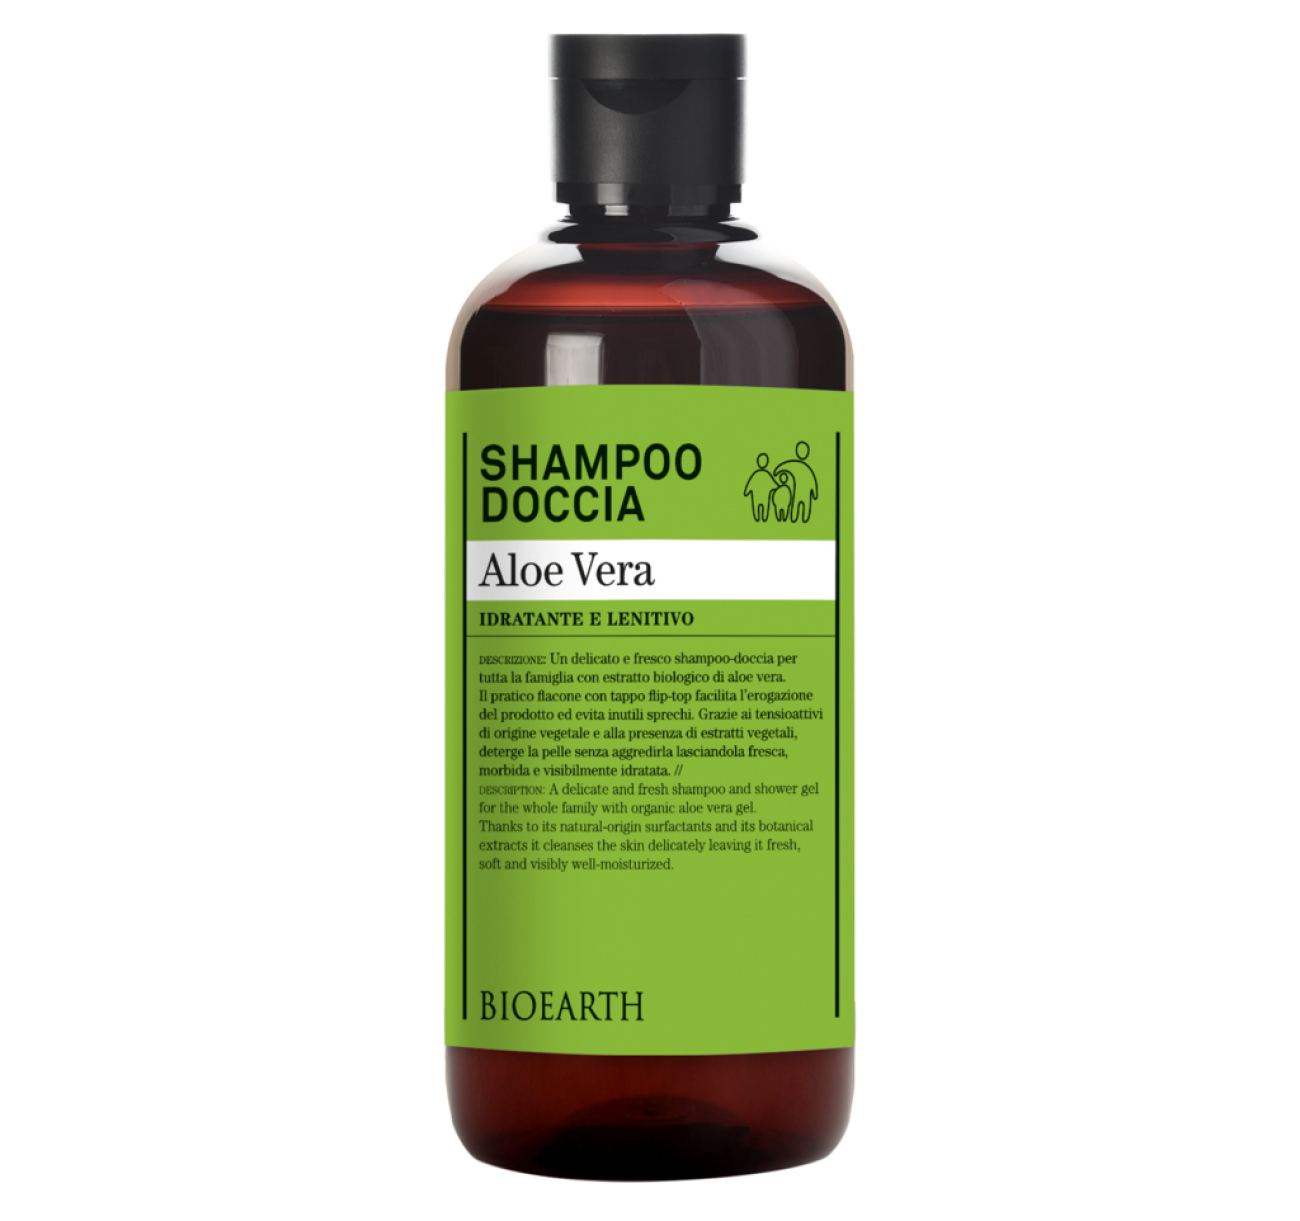 Shampoo Doccia Aloe Vera 500ml